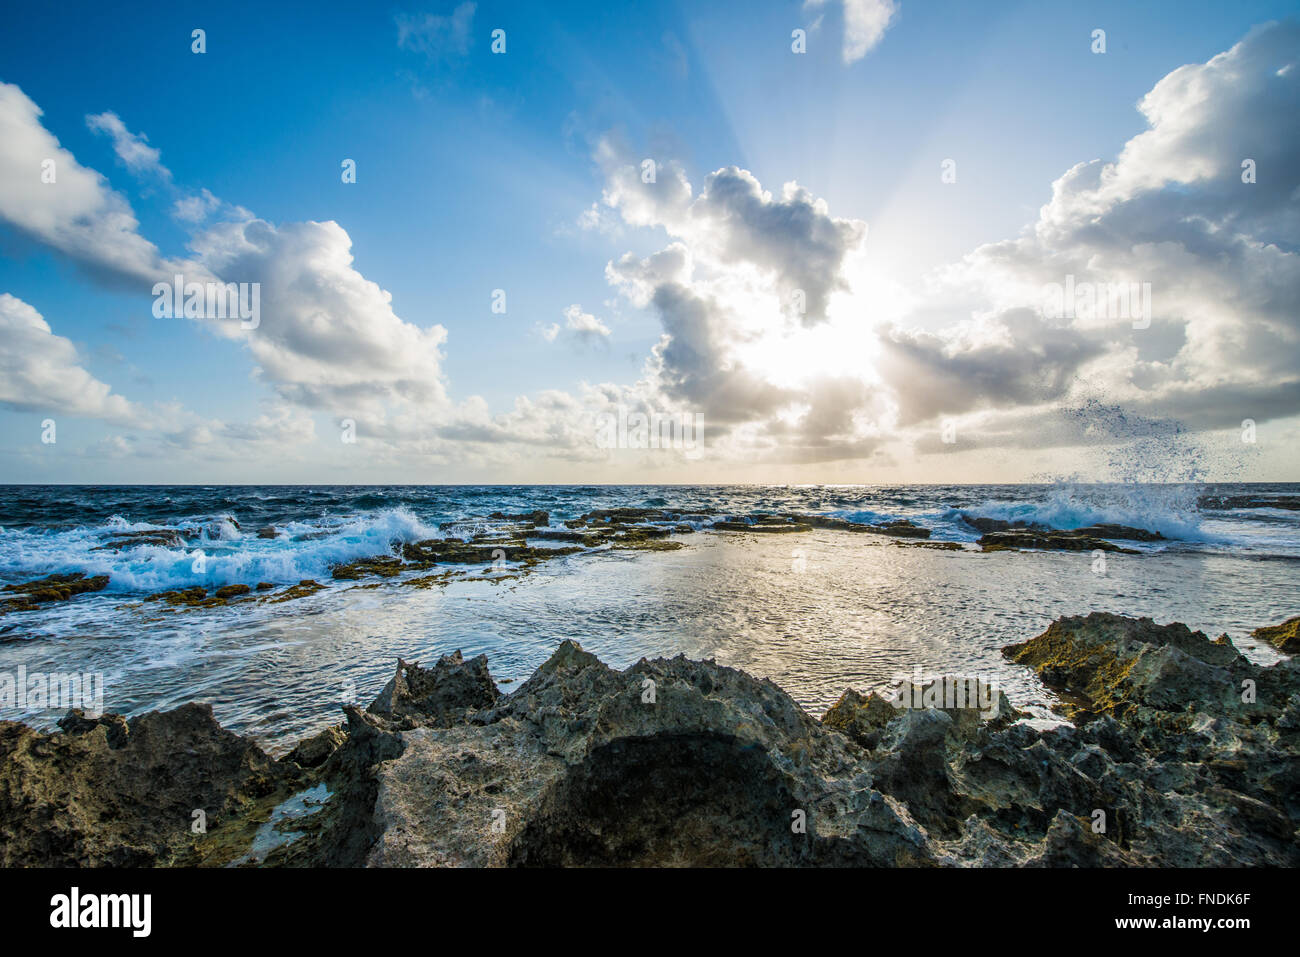 Bellissima vista sulle spiagge e il mare dei Caraibi di Bonaire con sun sining dietro le nuvole. Foto Stock